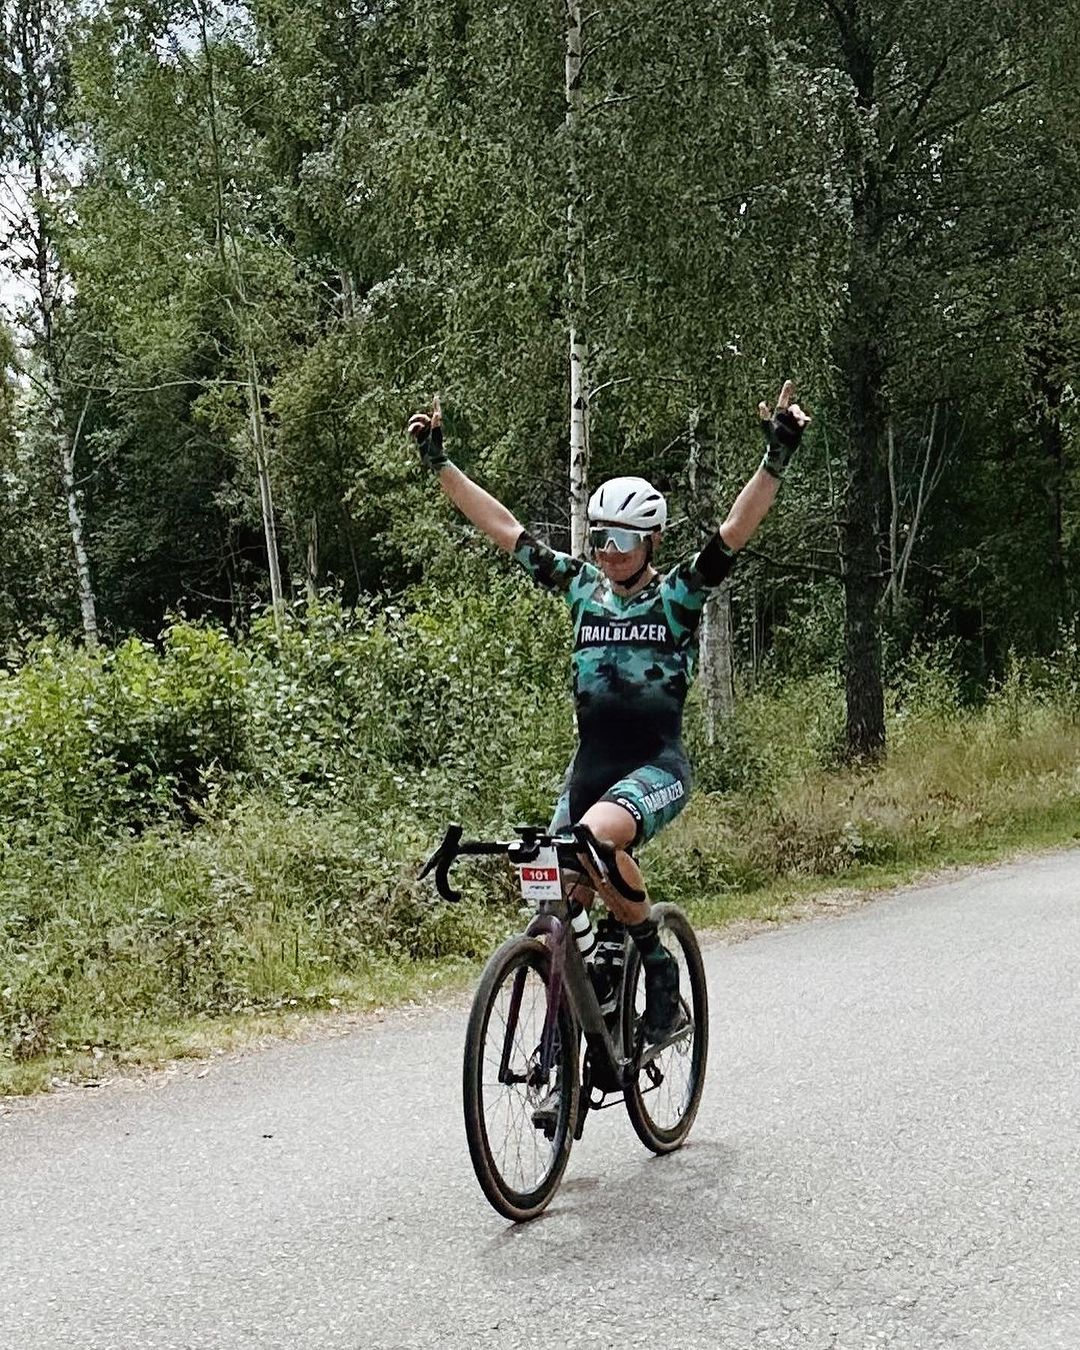 CCN Sport Presents: Nordic Trailblazer's Triumph at Unionsrittet